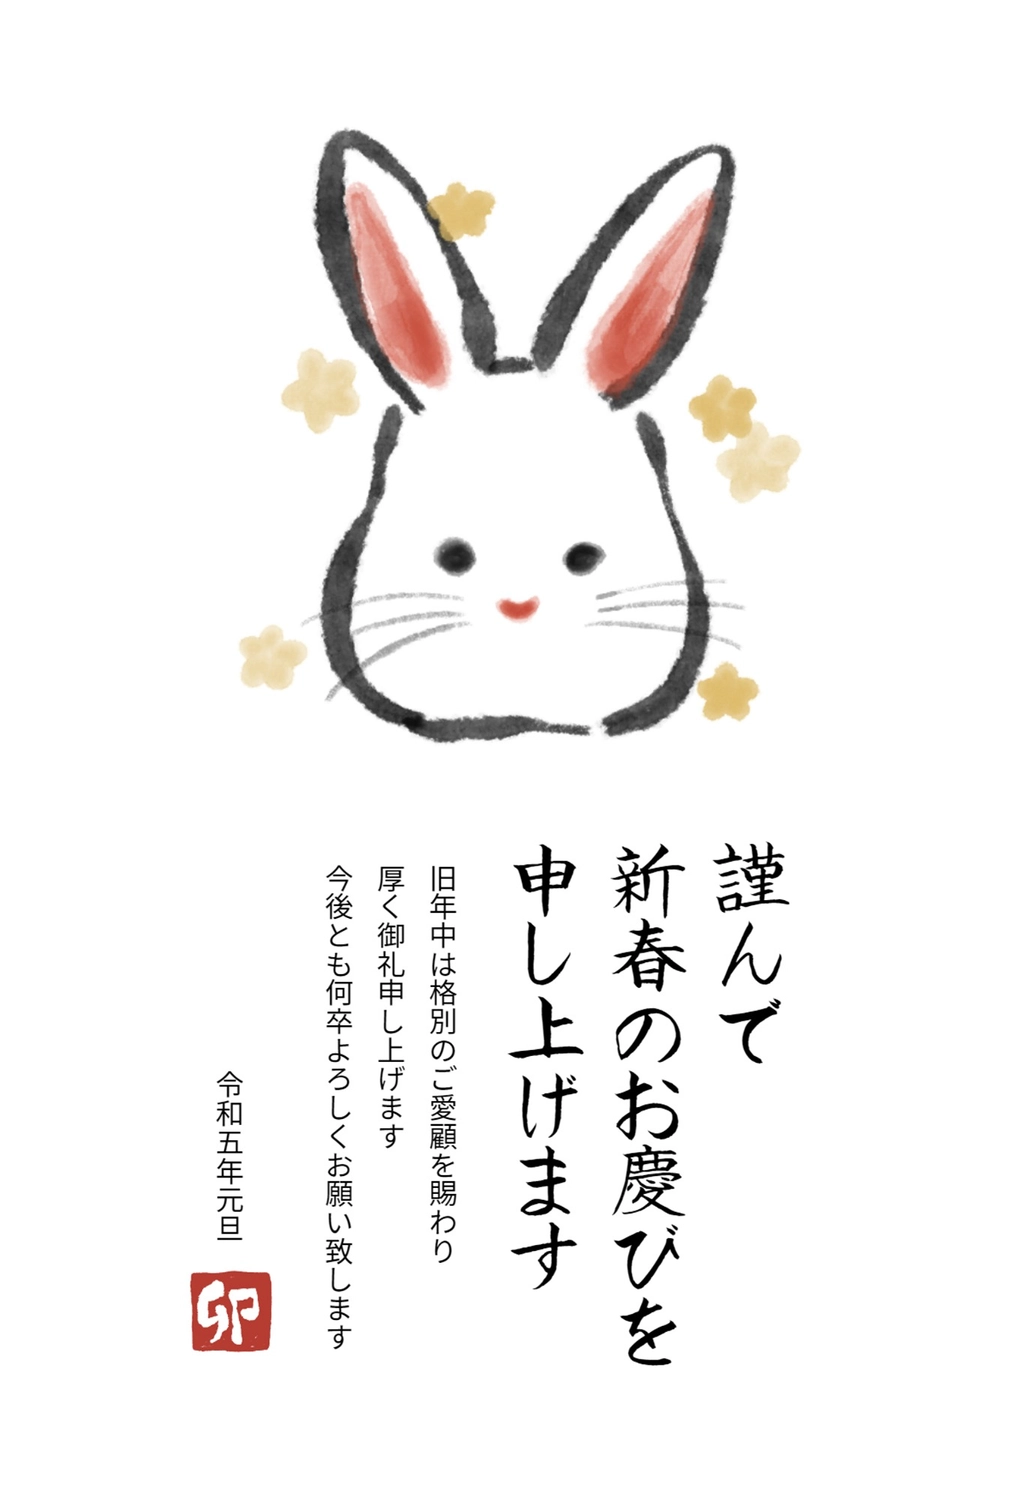 年賀状　絵手紙風のうさぎ, New Year's card, the manner of a letter written in picturesque style, letter made from a picture one has drawn, New Year Card template